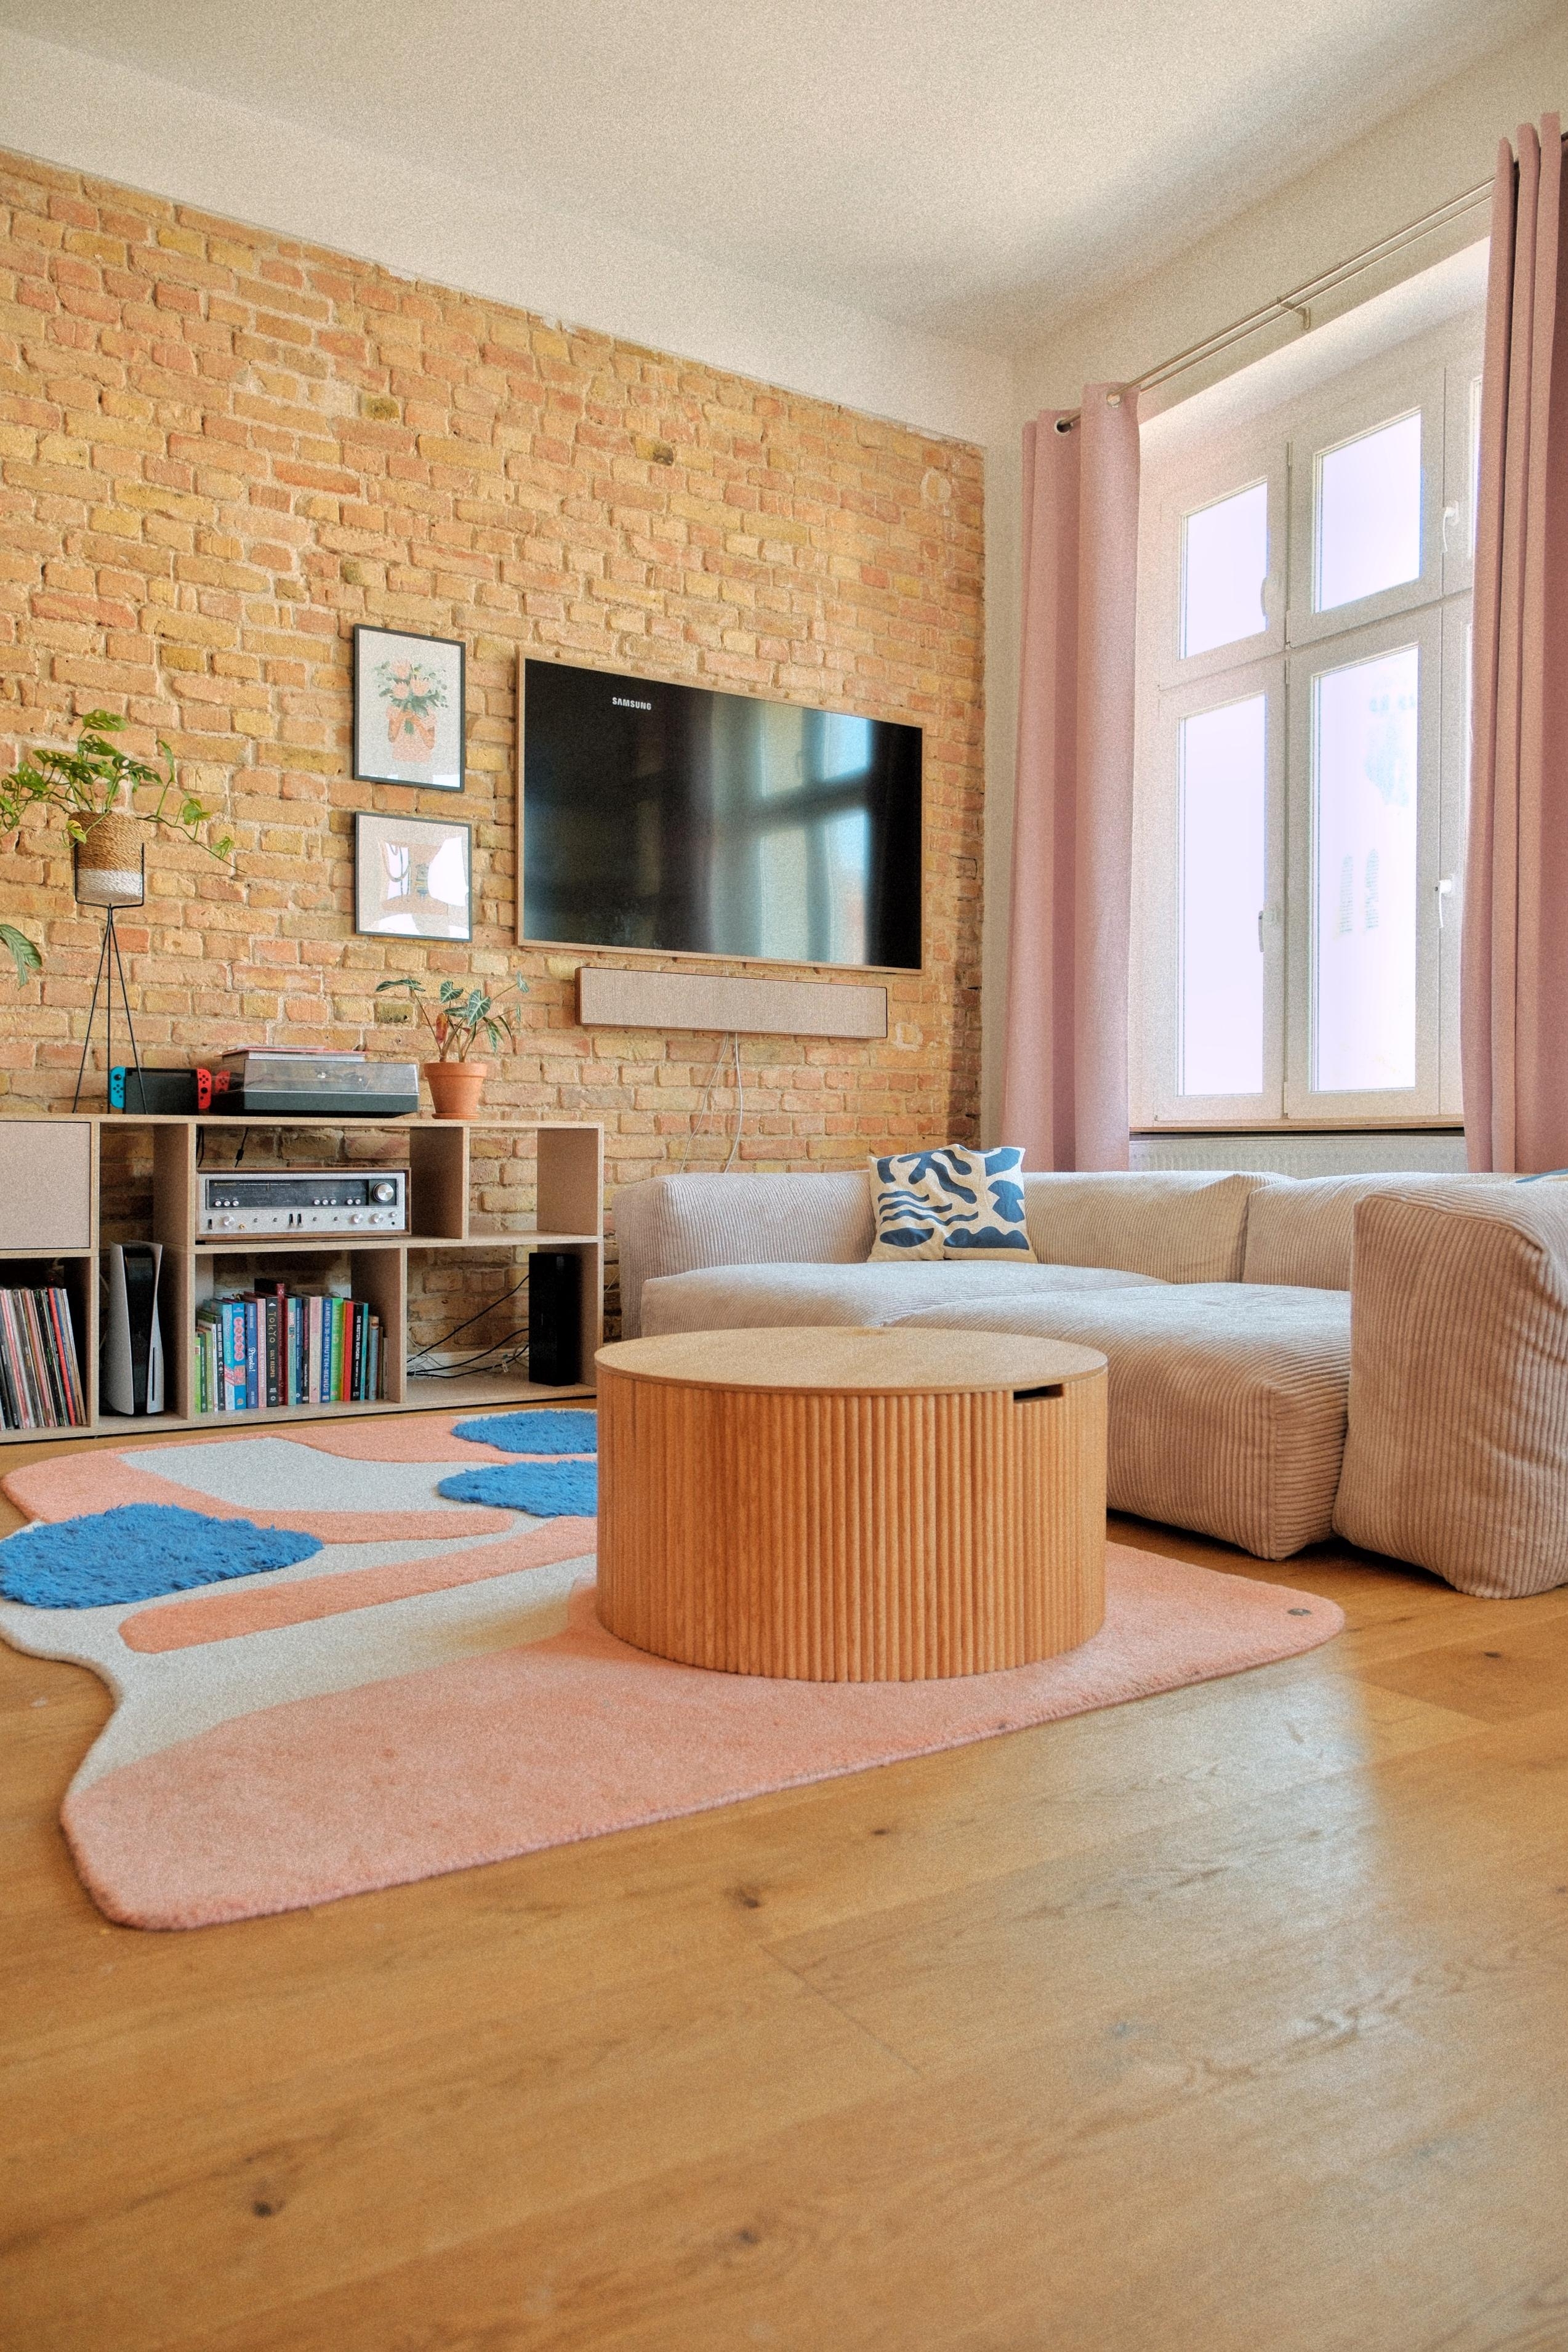 #wohnzimmer #backsteinwand #altbauwohnung #couchliebt #gemütlich #stauraum #farbenfroh #interior #sofa #tv #teppich